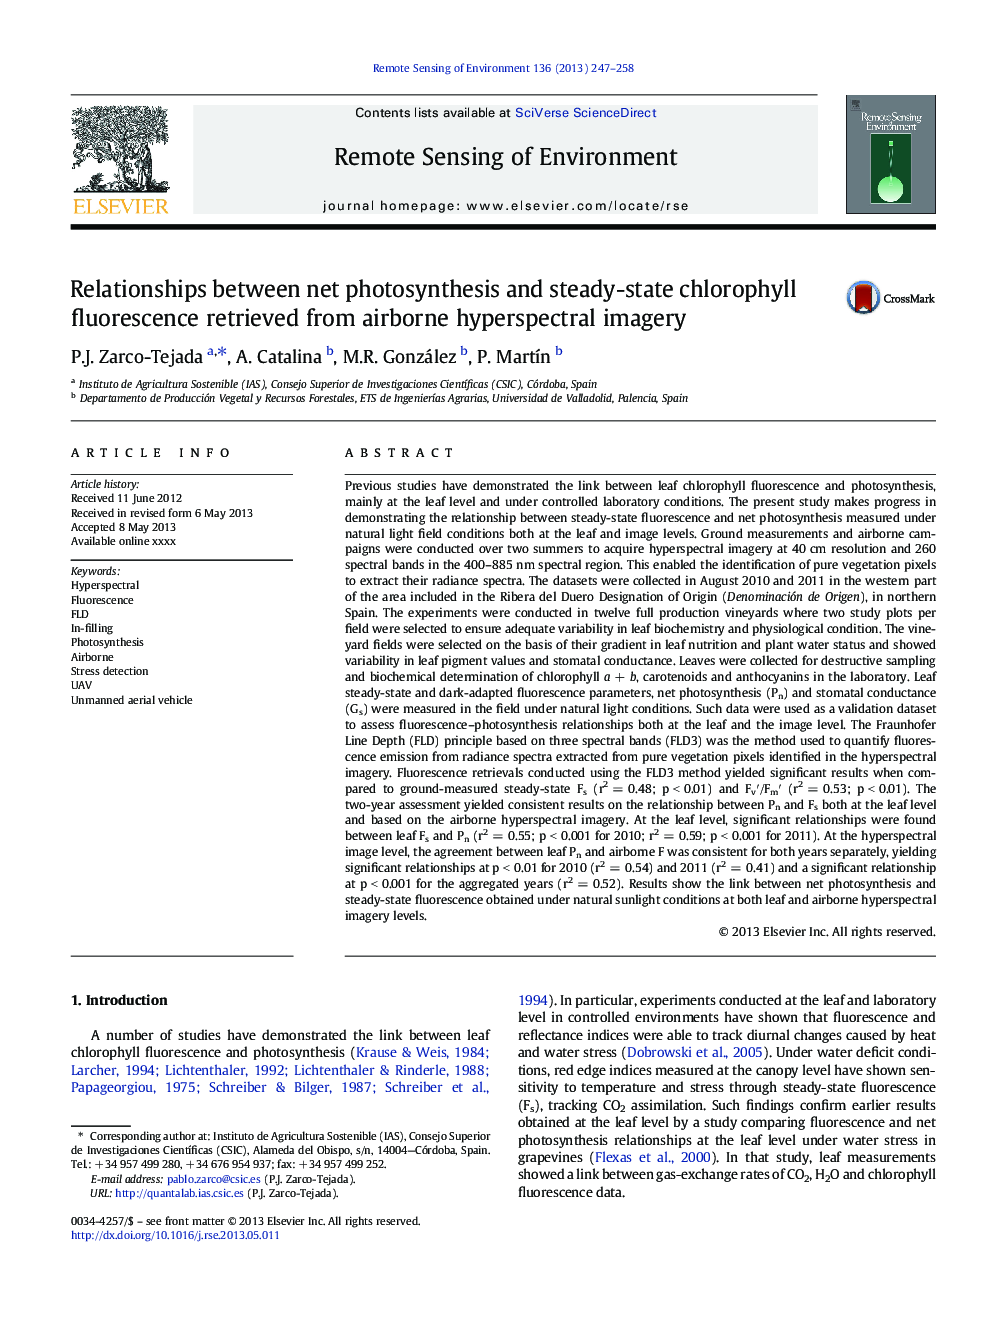 رابطه بین فتوسنتز خالص و فلورسانس کلروفیل حالت پایدار از بازیابی تصاویر هیپرپرترورافی هوایی 